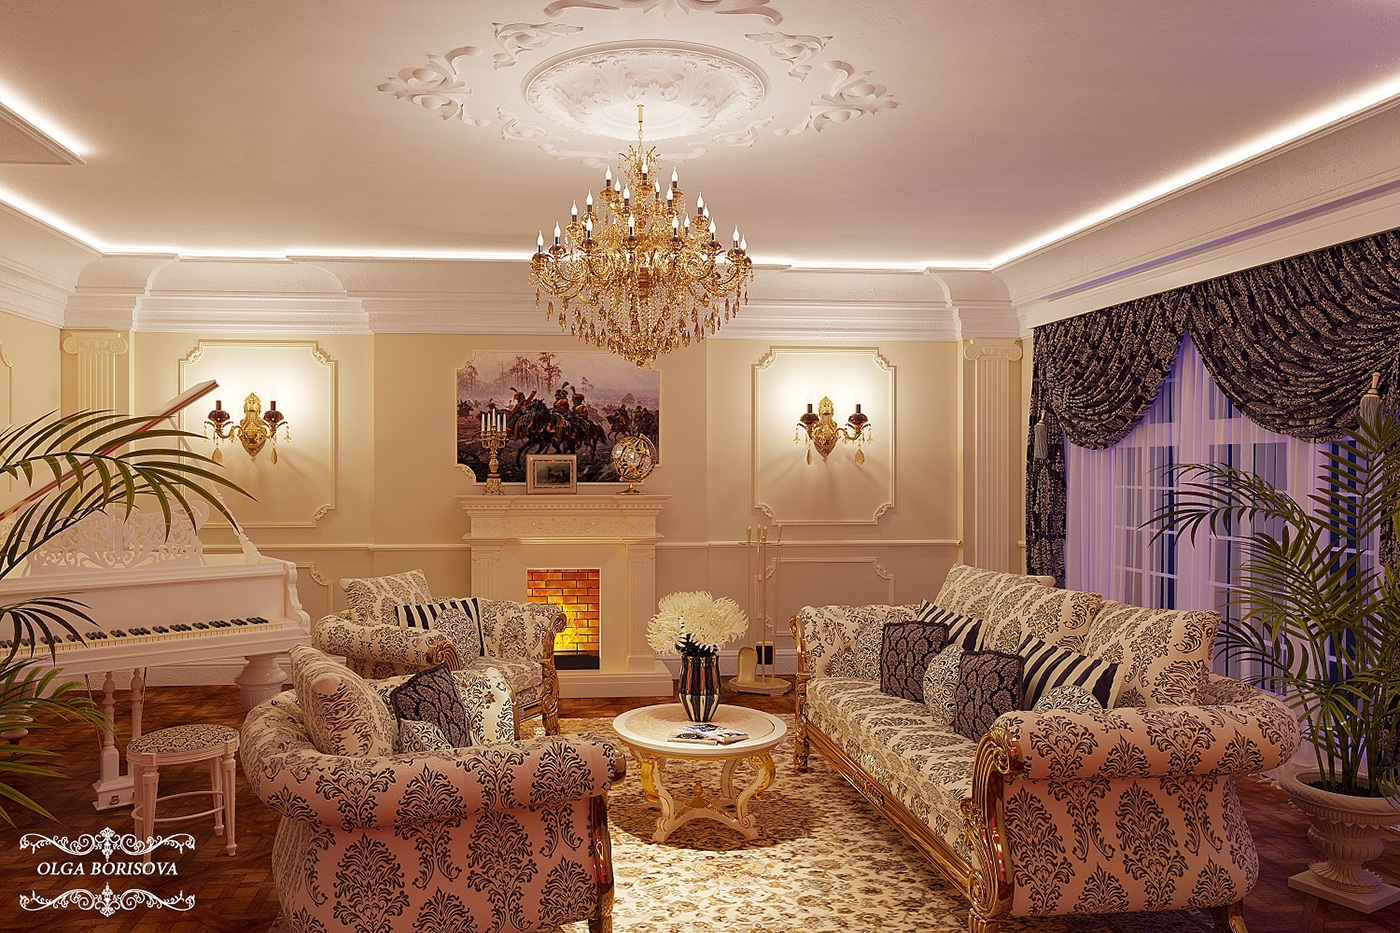 дизайн-проект дизайн интерьеров дизайн студия стиль жизни interior design  home decor design Borisova design visualizer